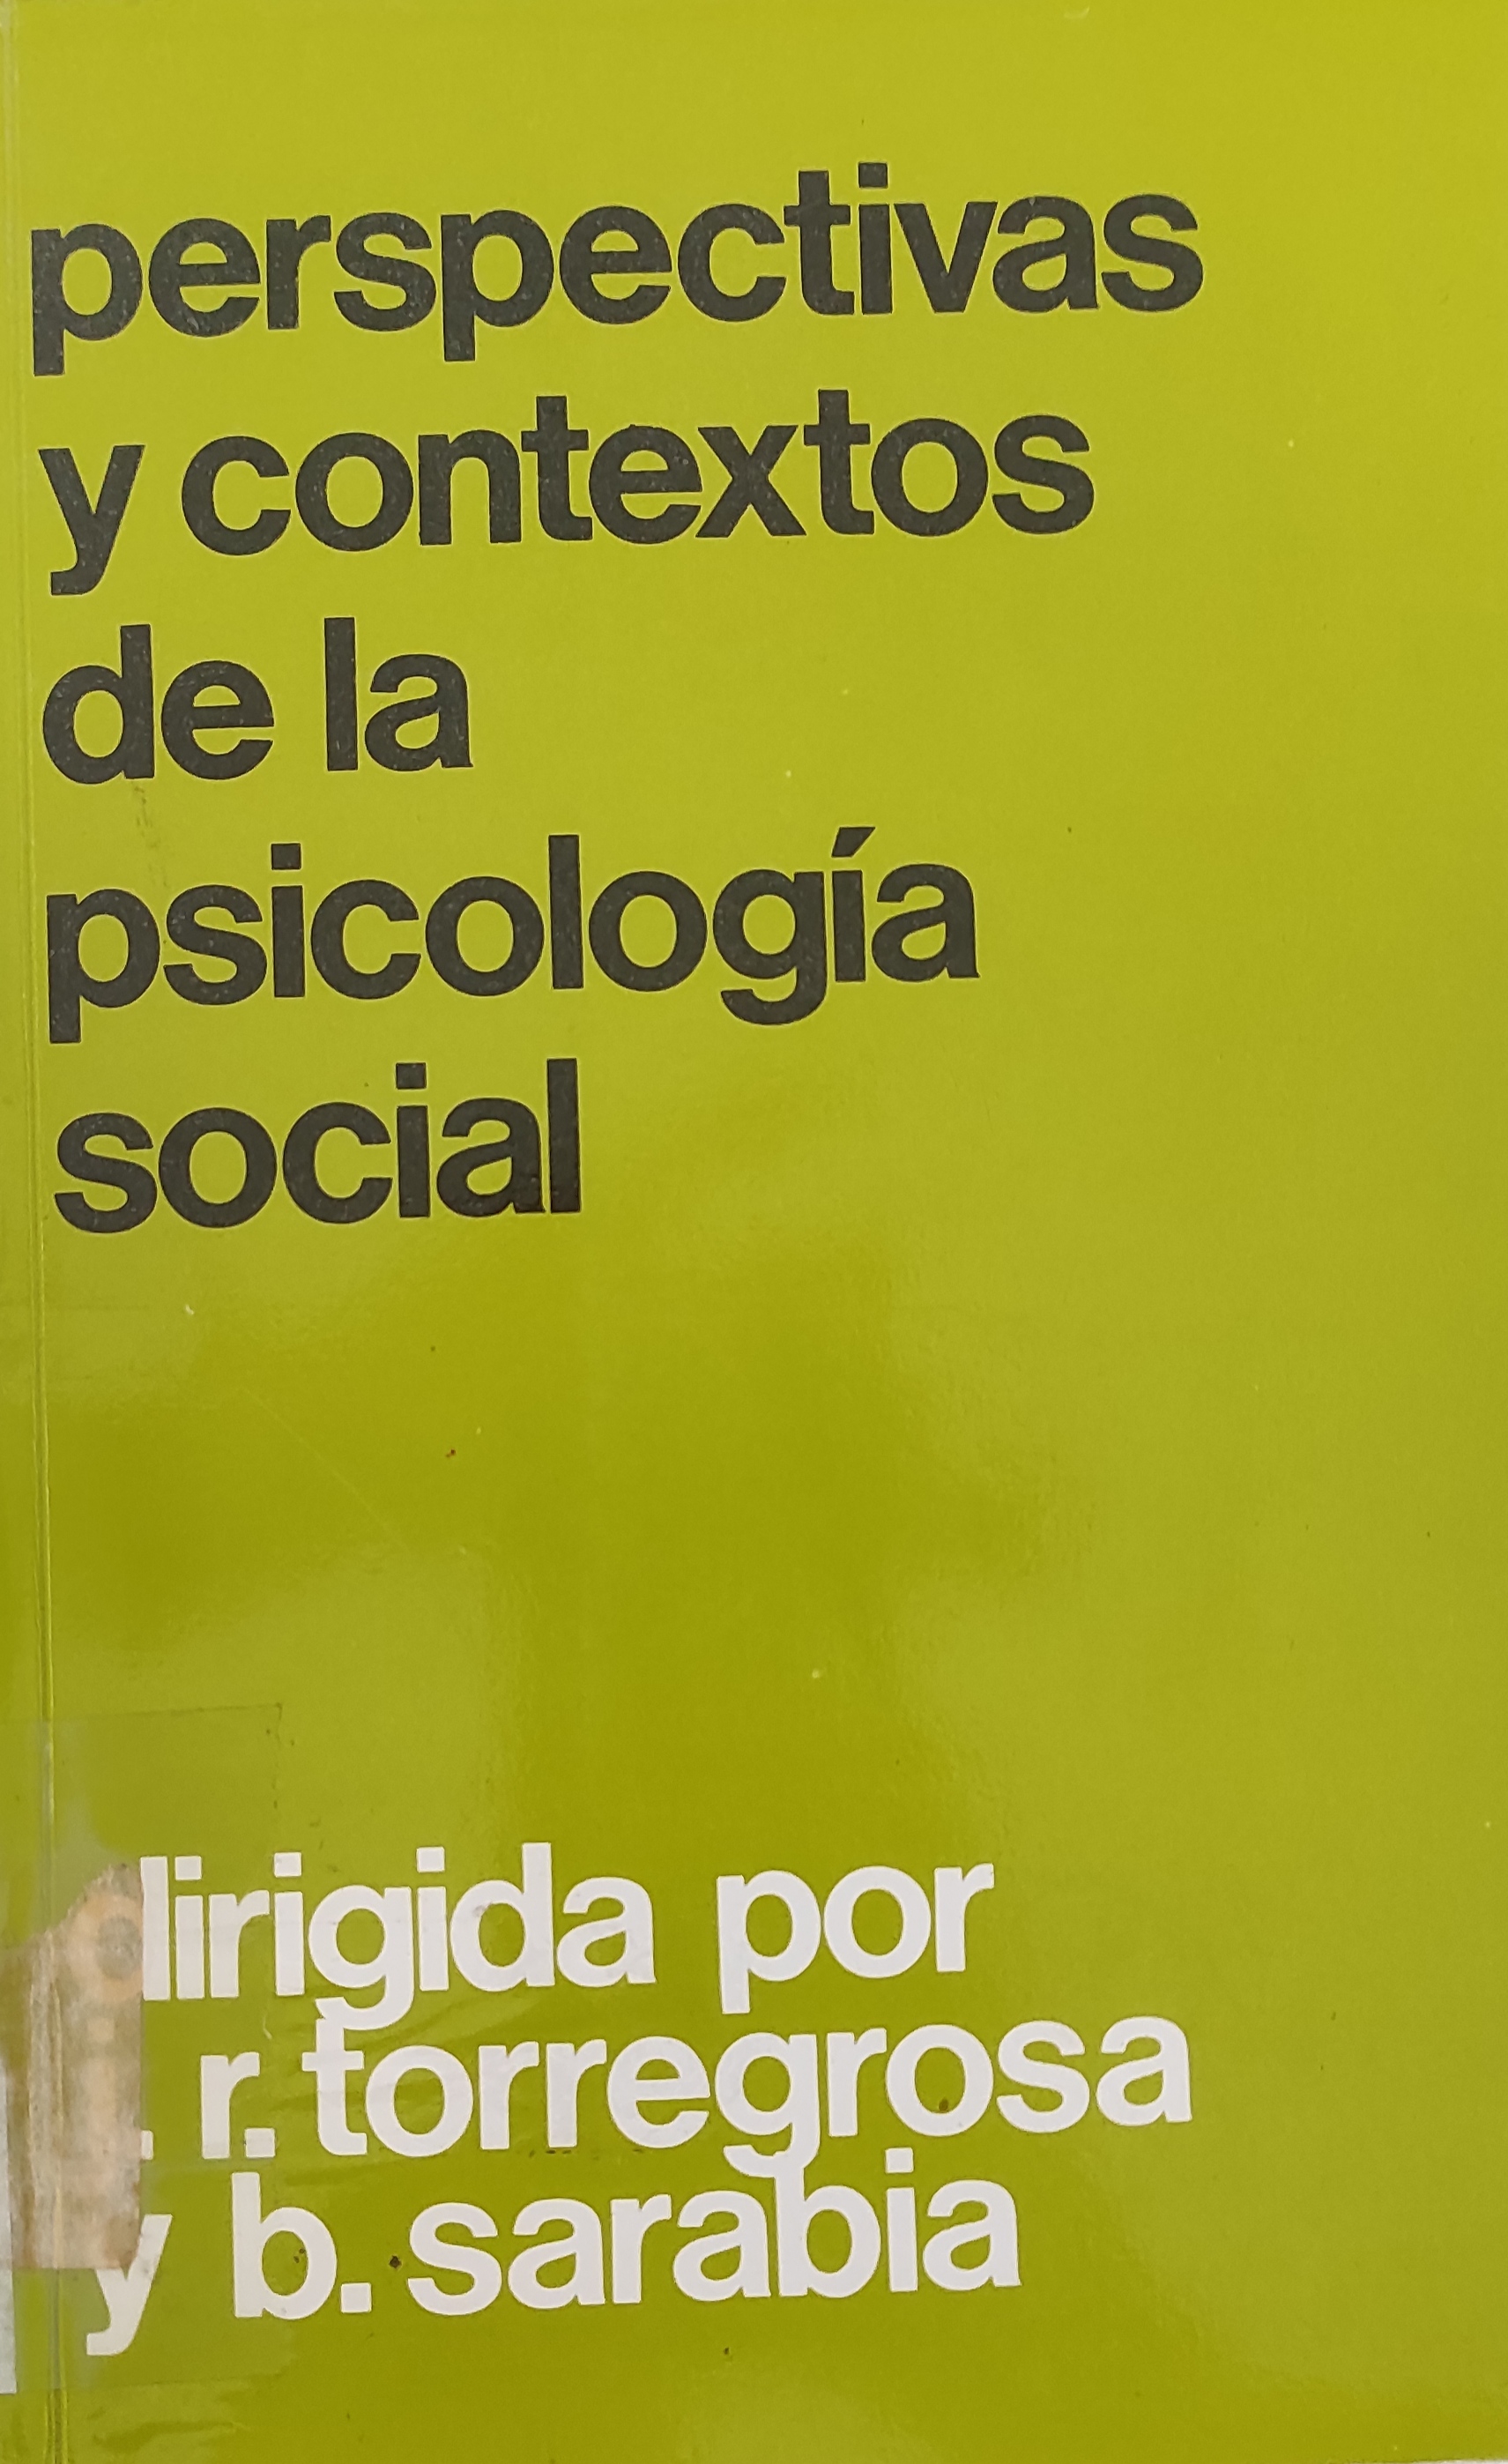 Imagen de portada del libro Perspectivas y contextos de la psicología social